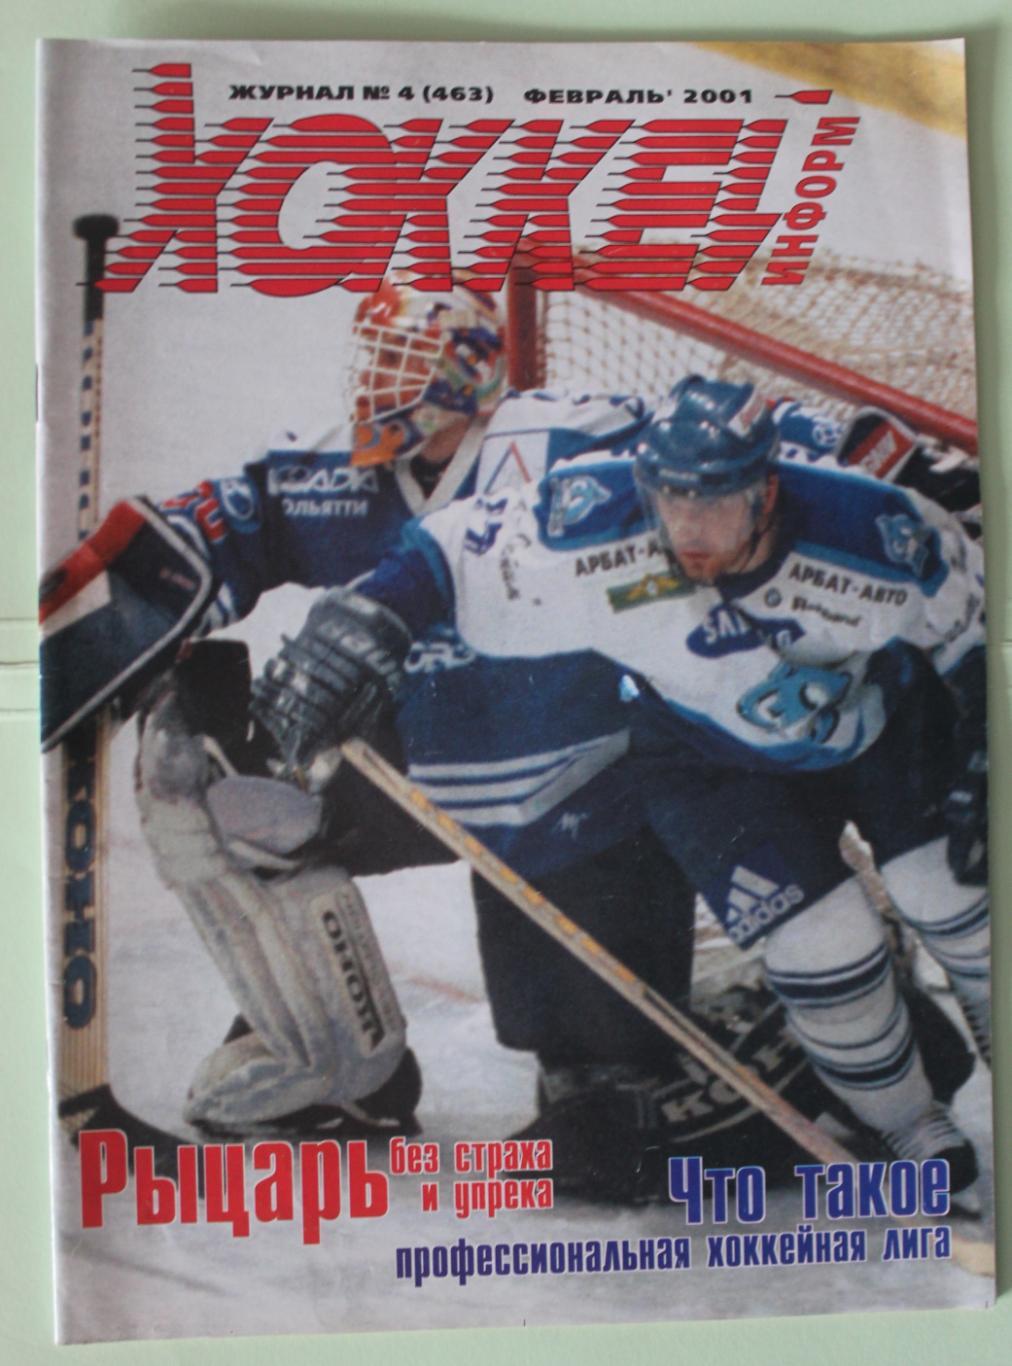 Еженедельник Хоккей-информ № 4 (463) февраль 2001